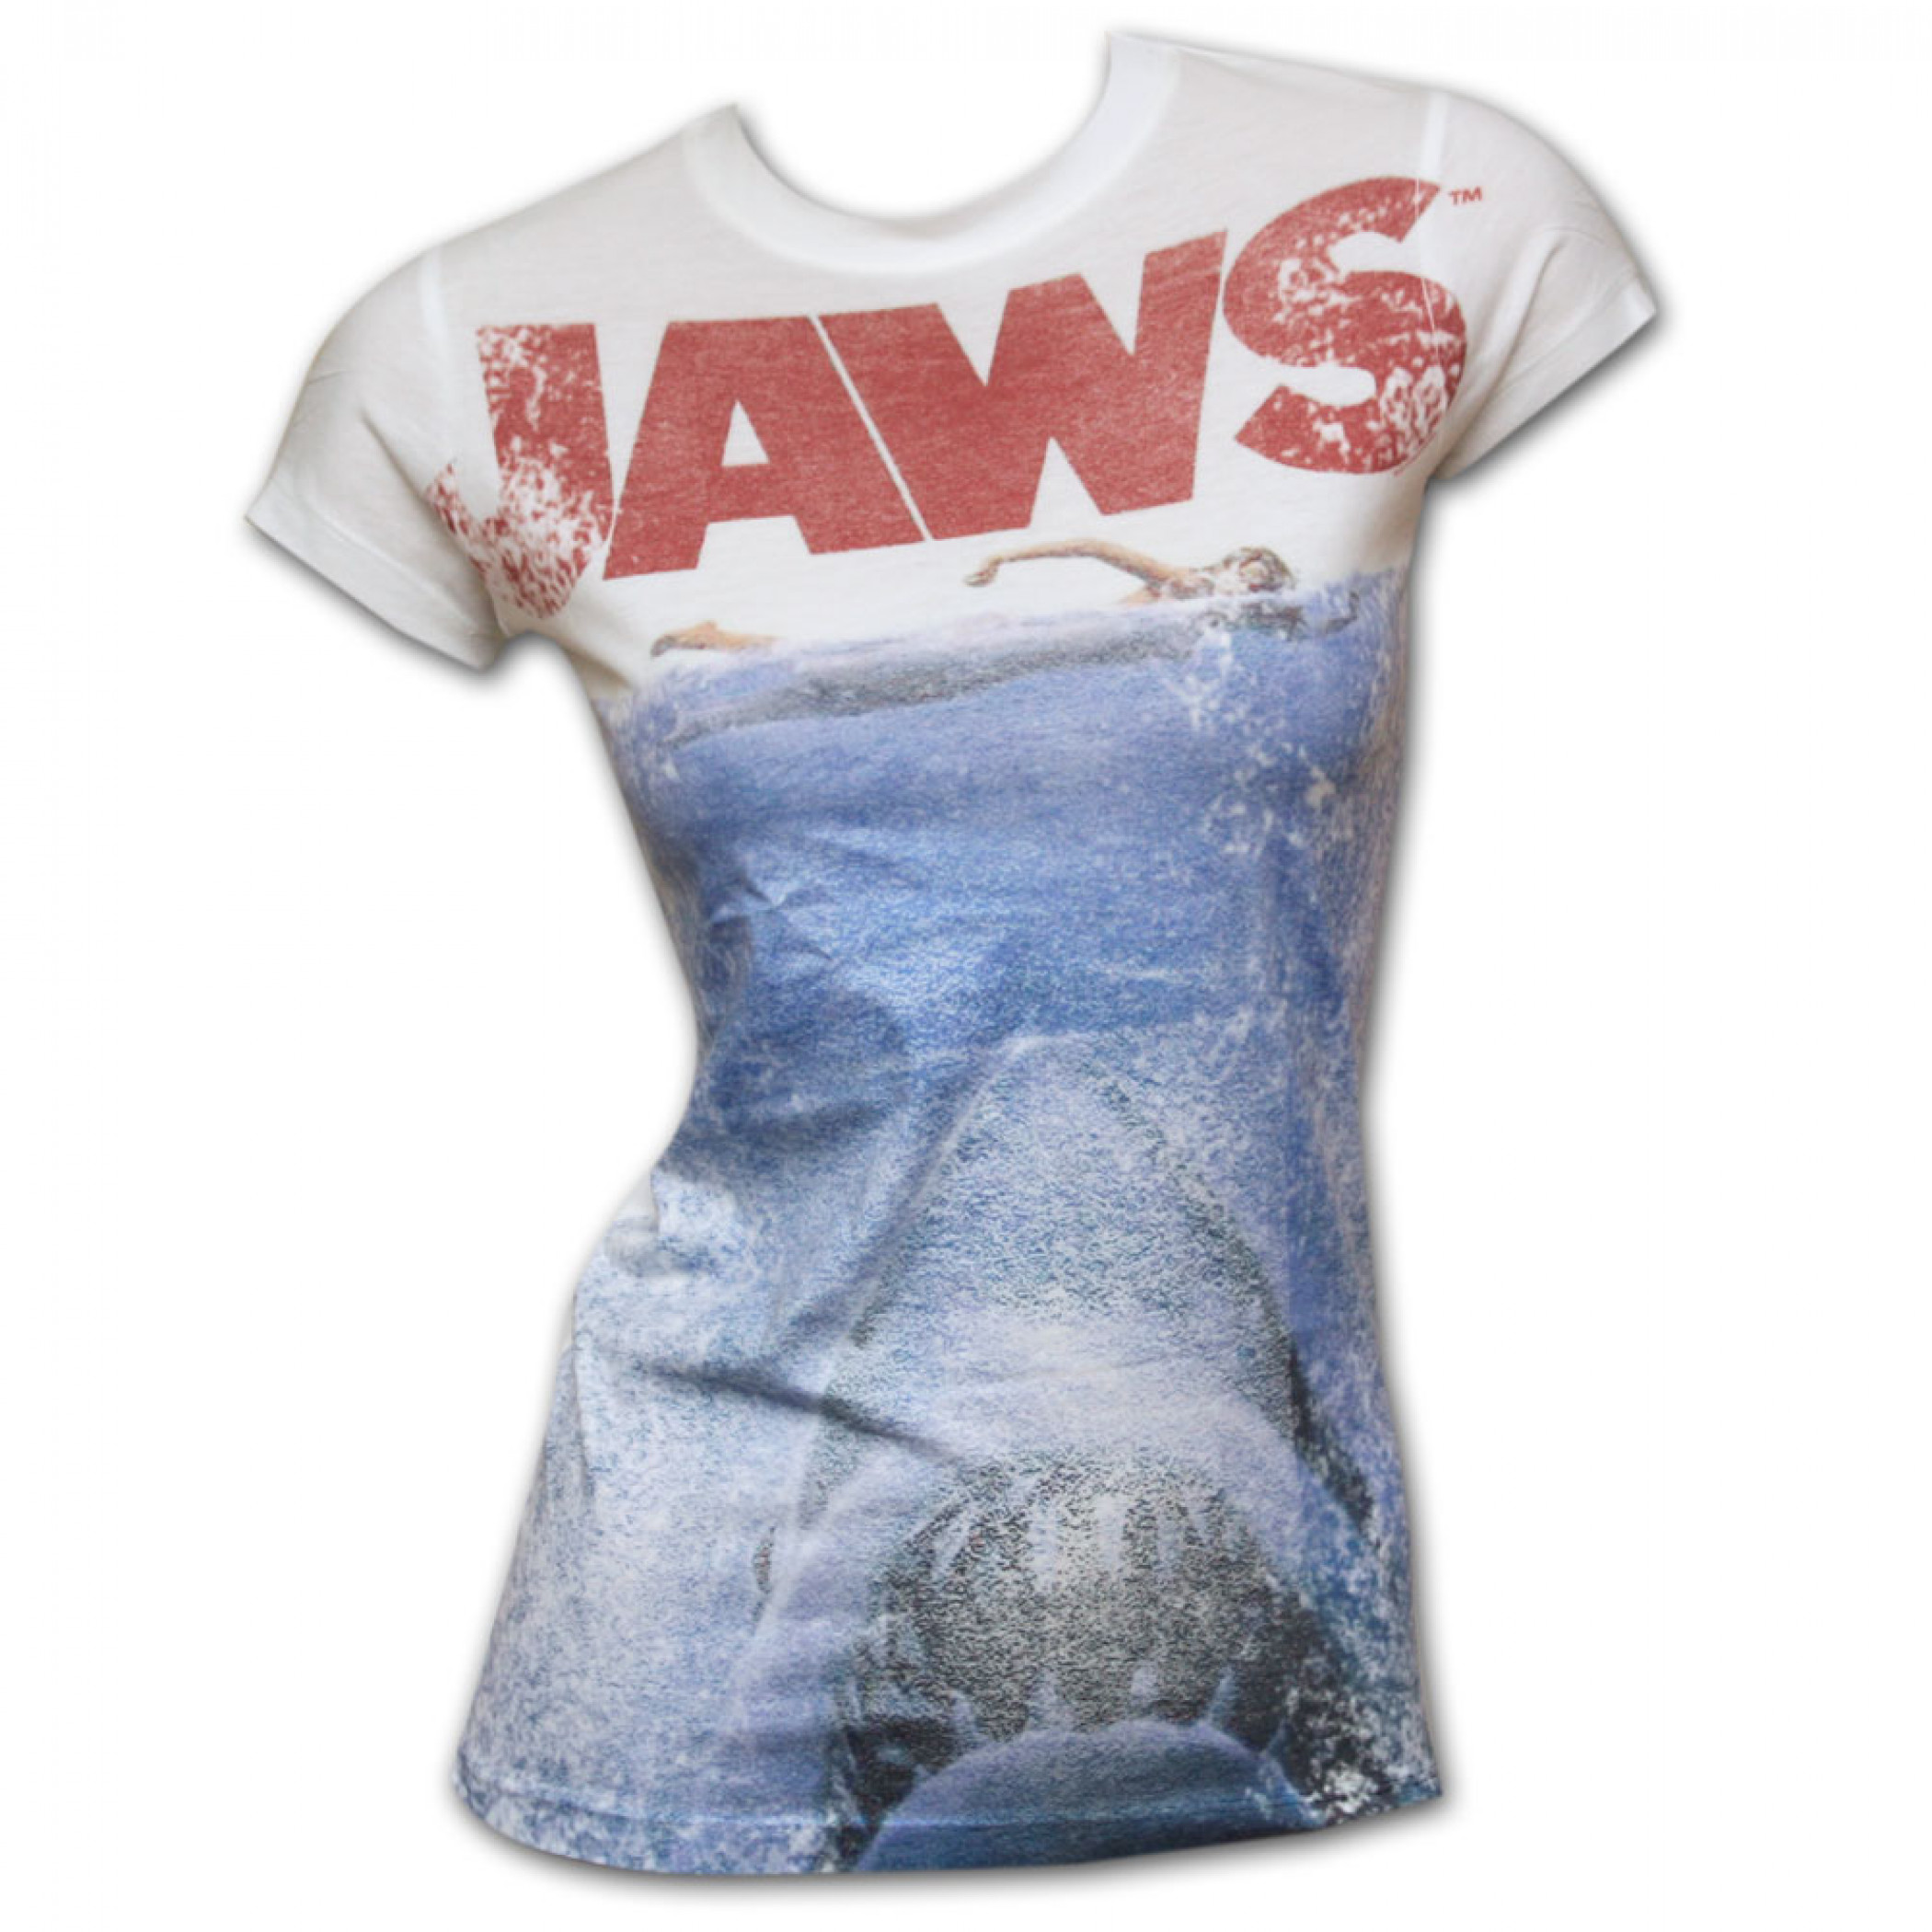 Jaws Ocean Lightweight Juniors Graphic Tee Shirt